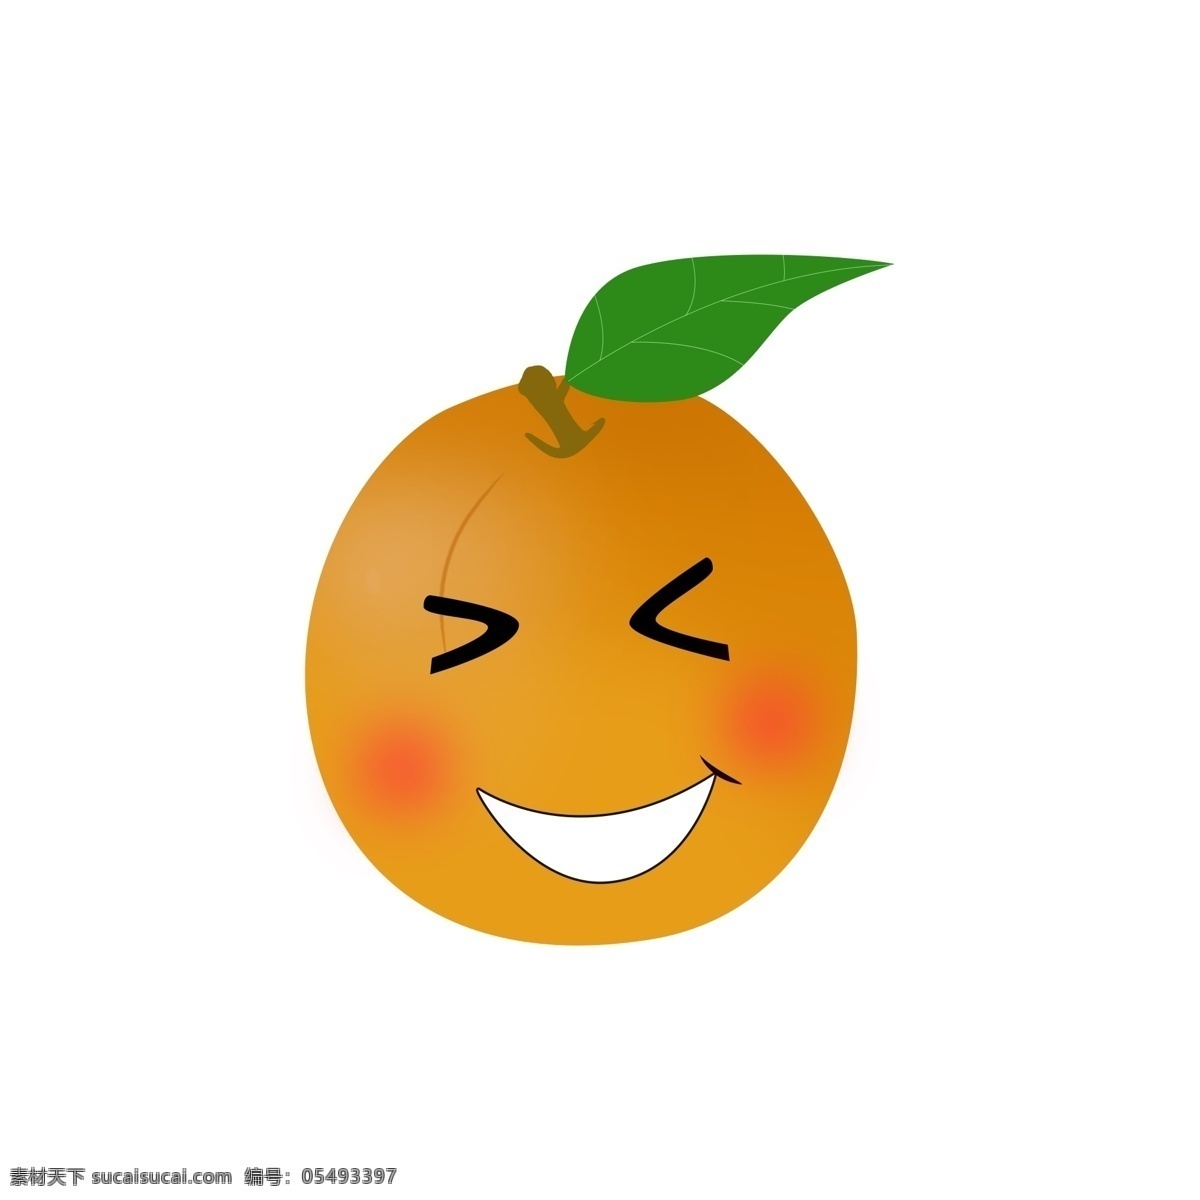 可爱 水果 橙子 卡通 笑脸 元素 设计元素